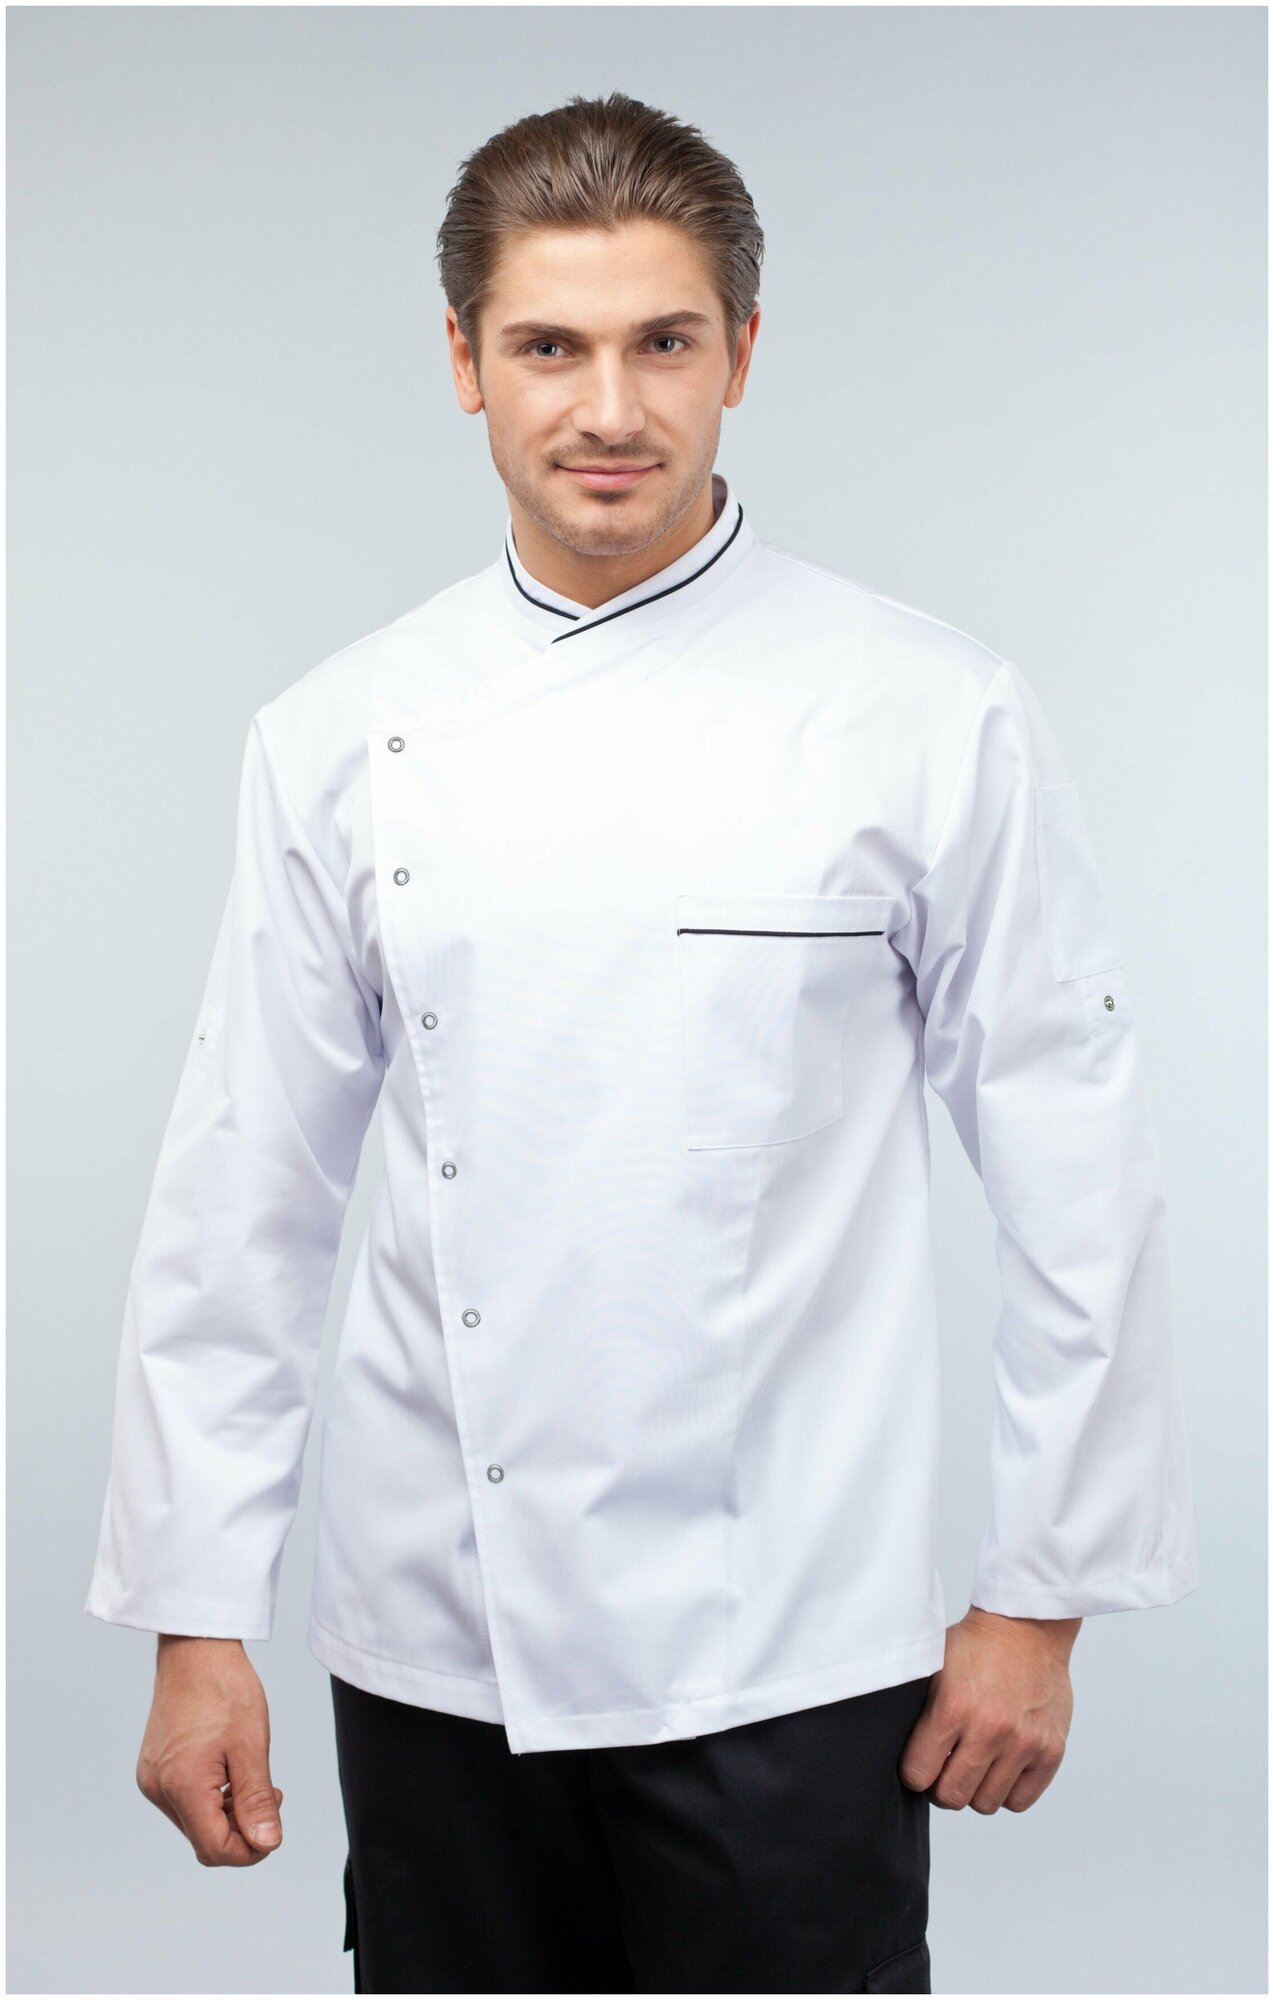 Куртка для повара мужская/Китель поварской мужской Uniforms (цвет белый с чёрным кантом, 54 размер)